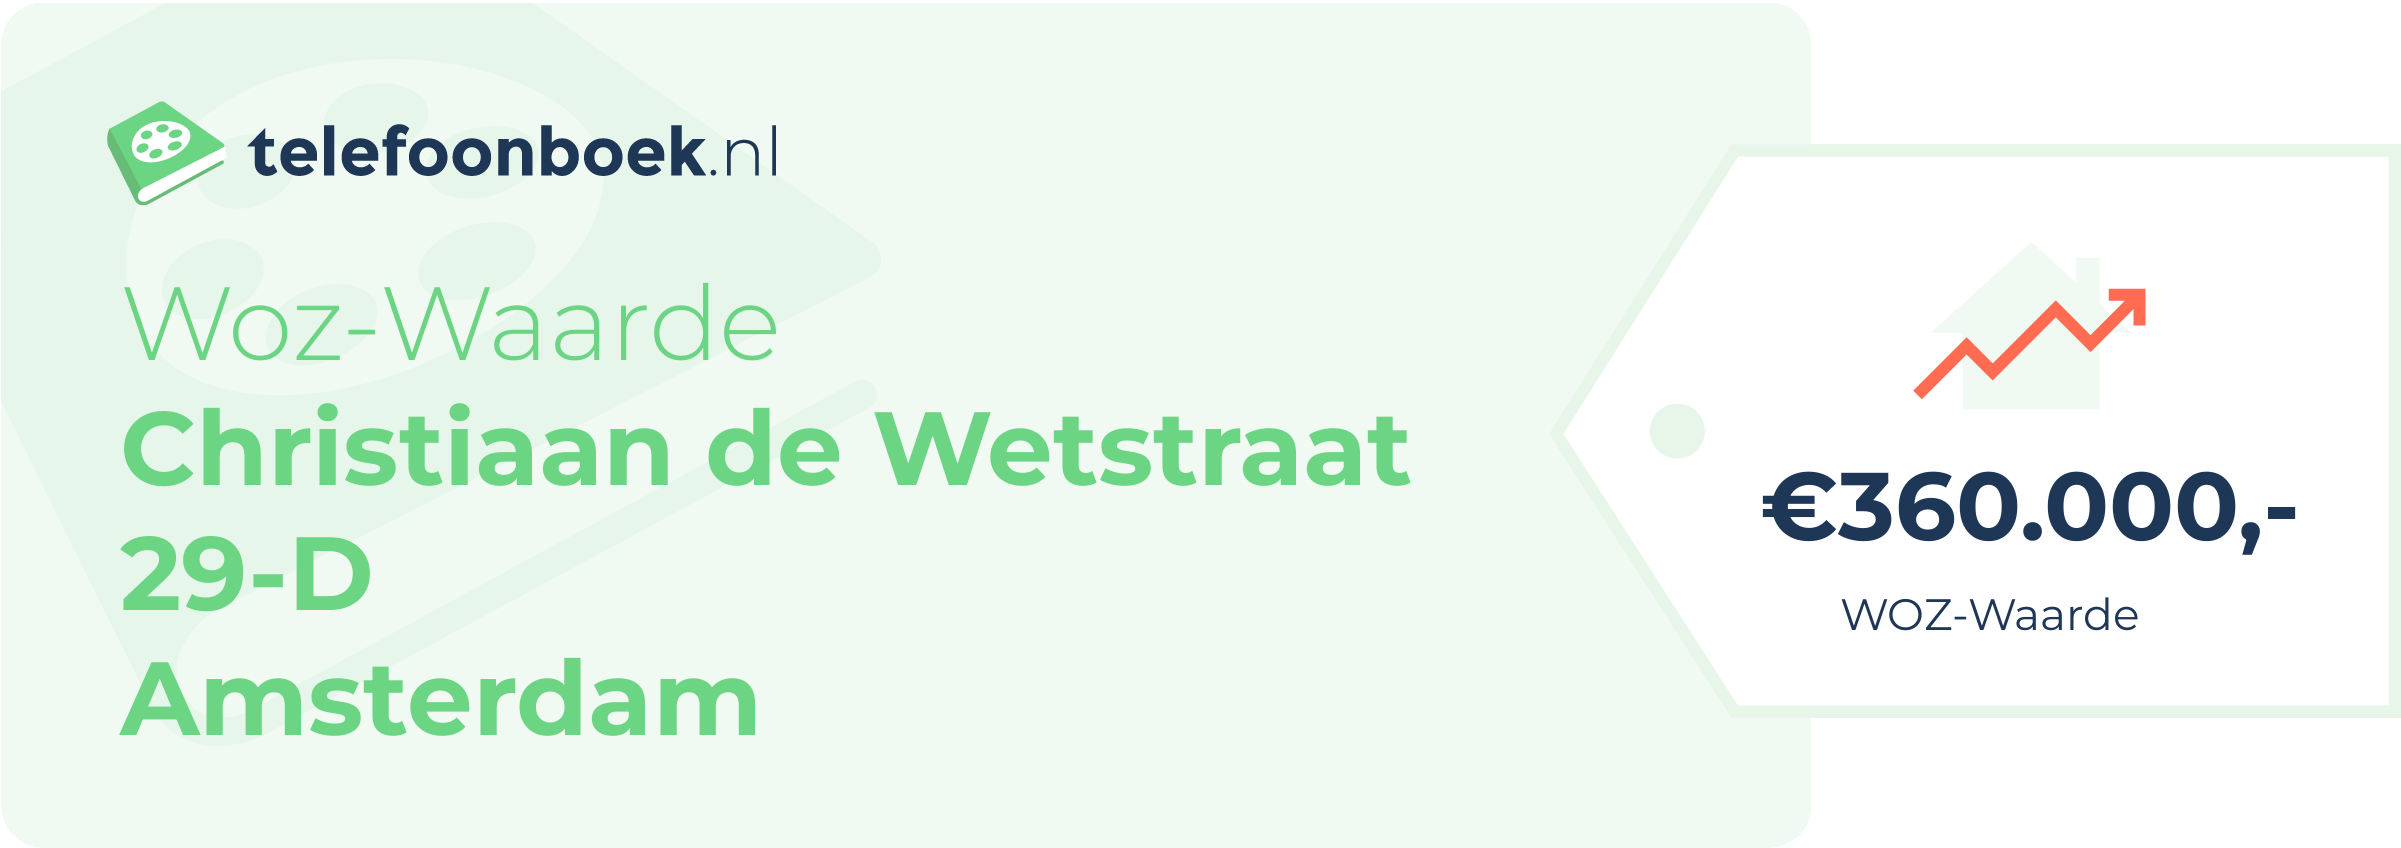 WOZ-waarde Christiaan De Wetstraat 29-D Amsterdam